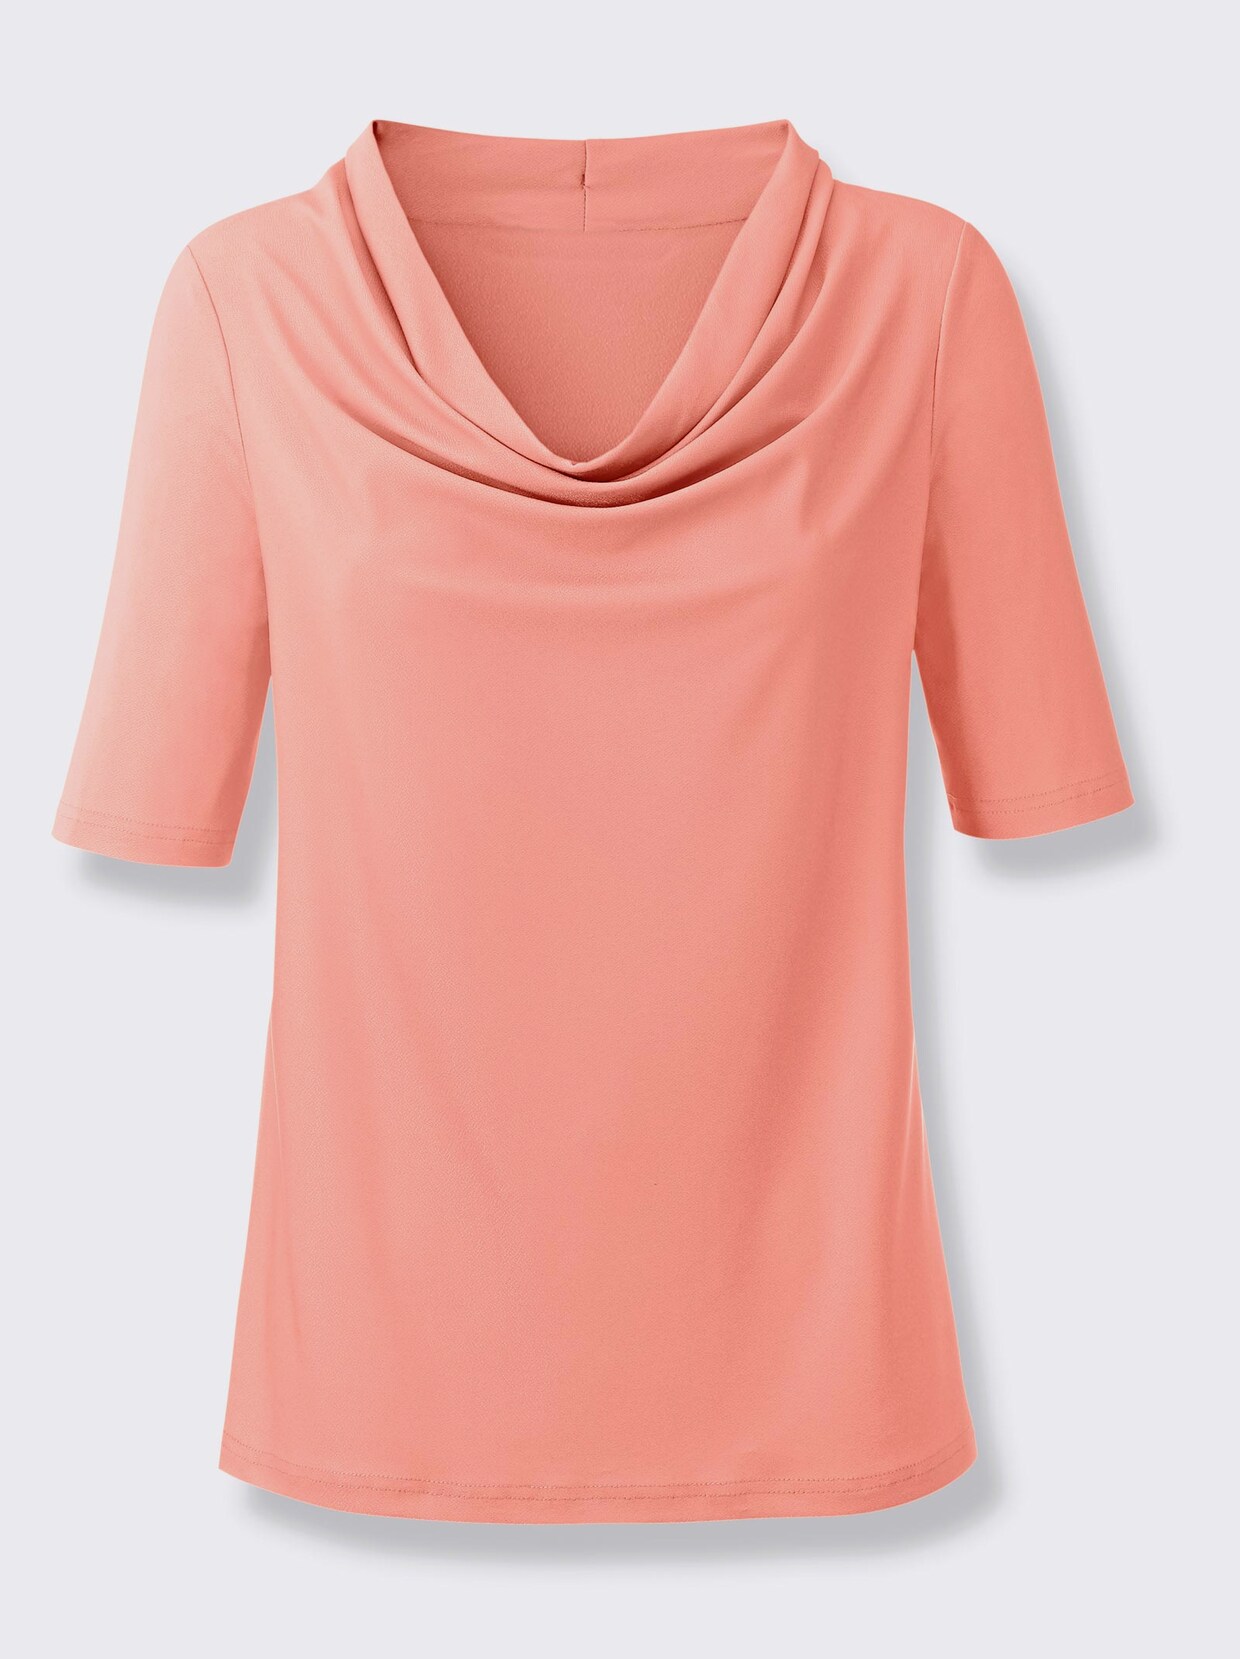 Ashley Brooke Shirt - flamingo